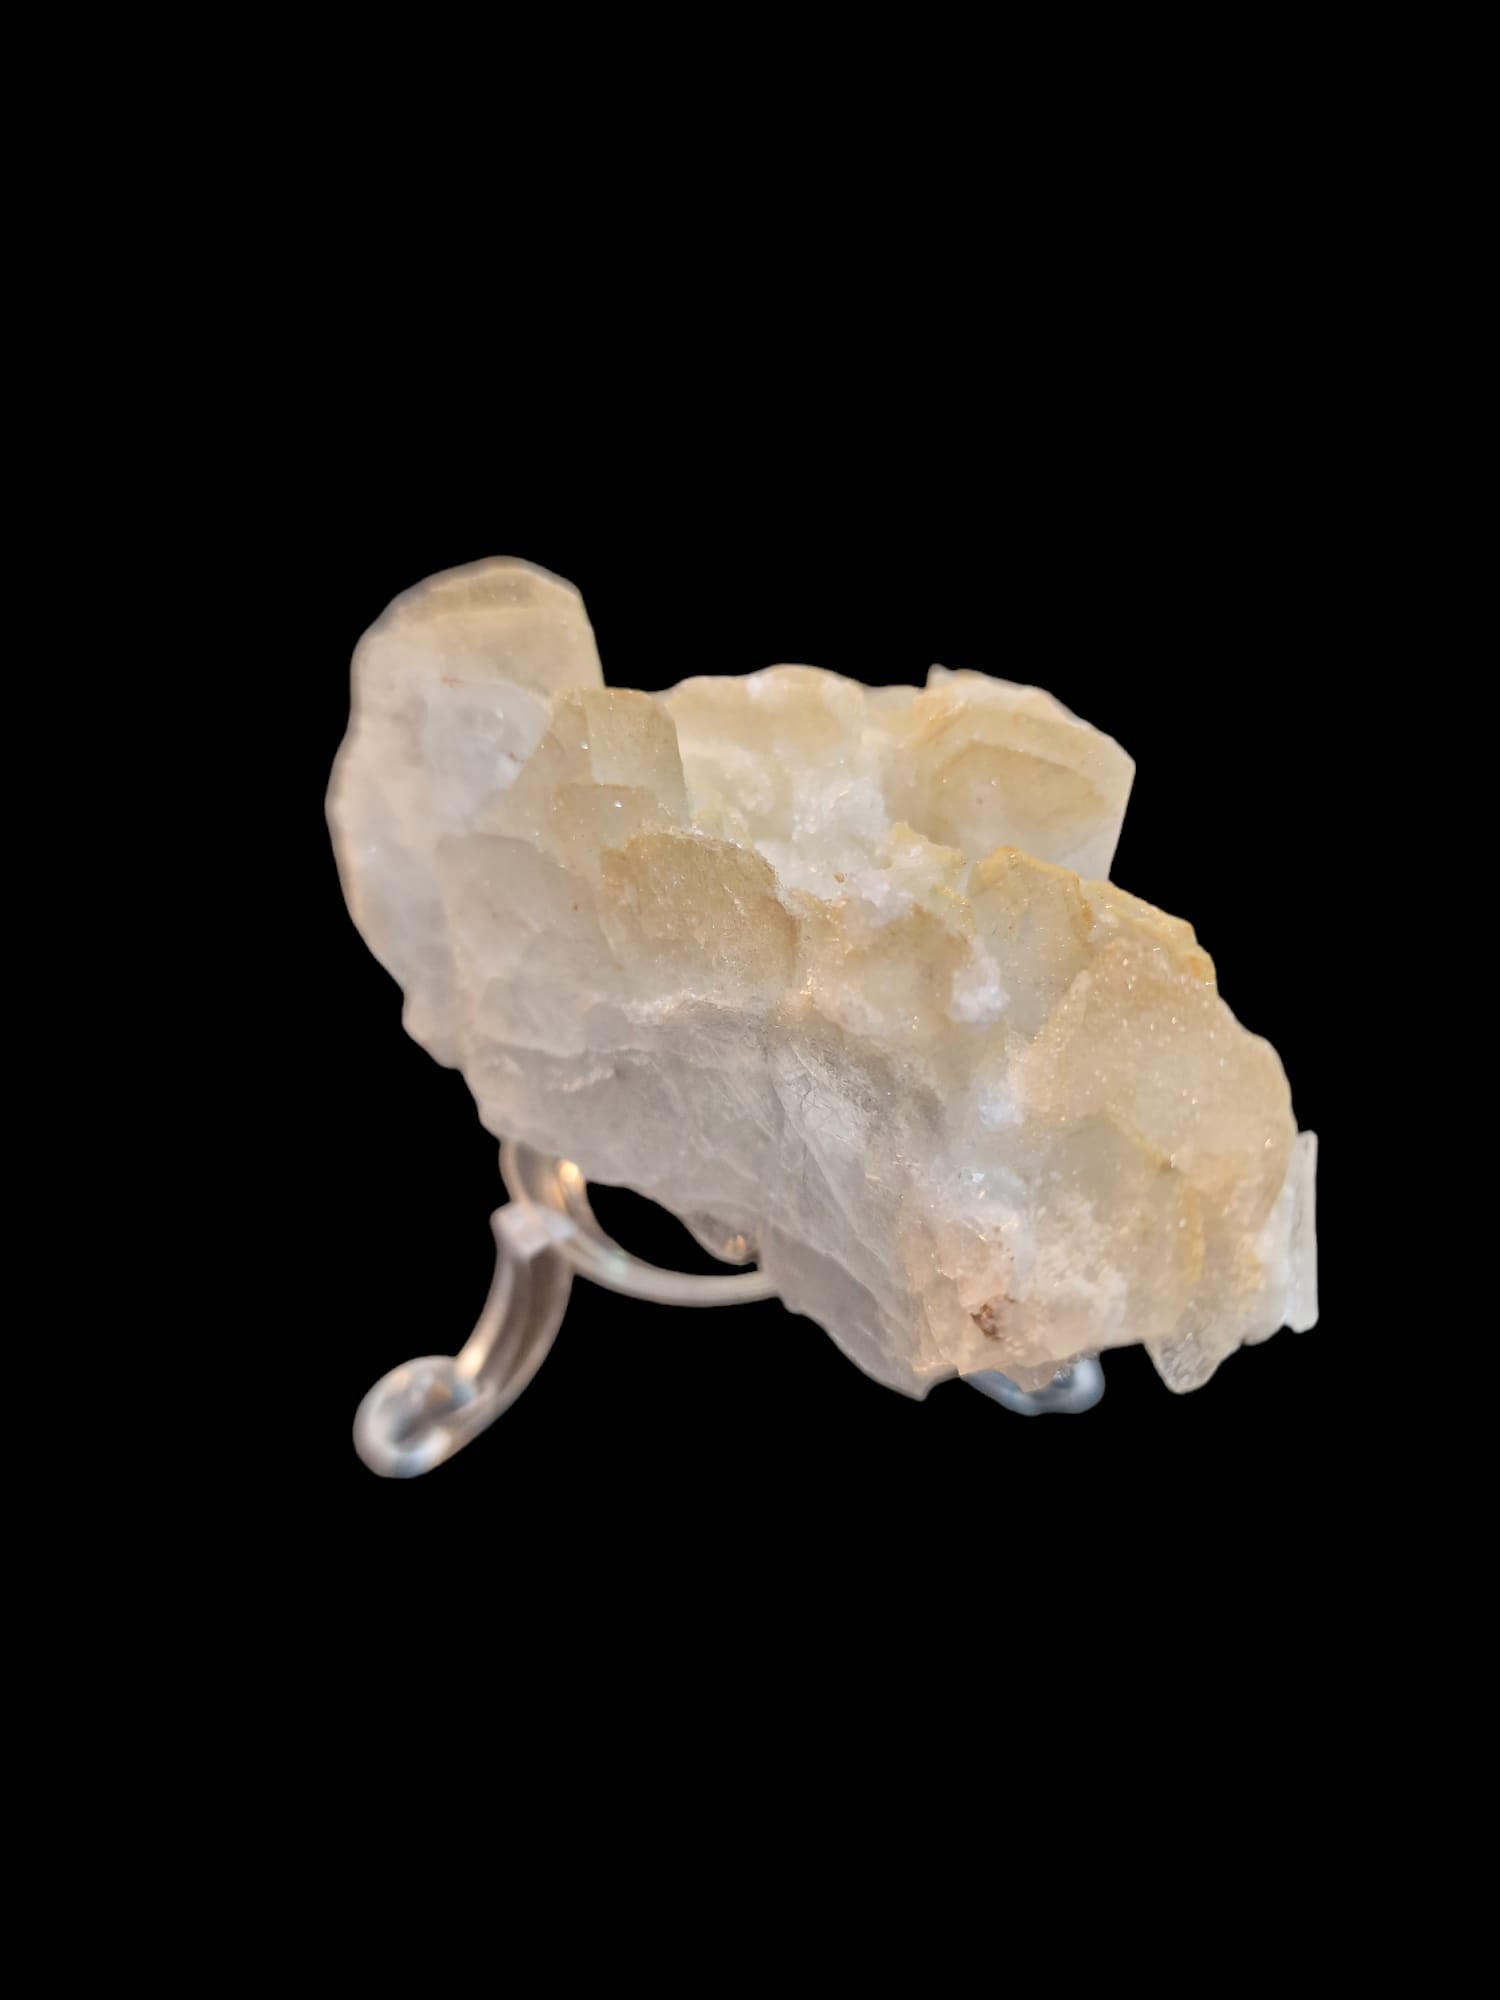 Golden White Celestine/Celestite Mineral Specimen Cluster